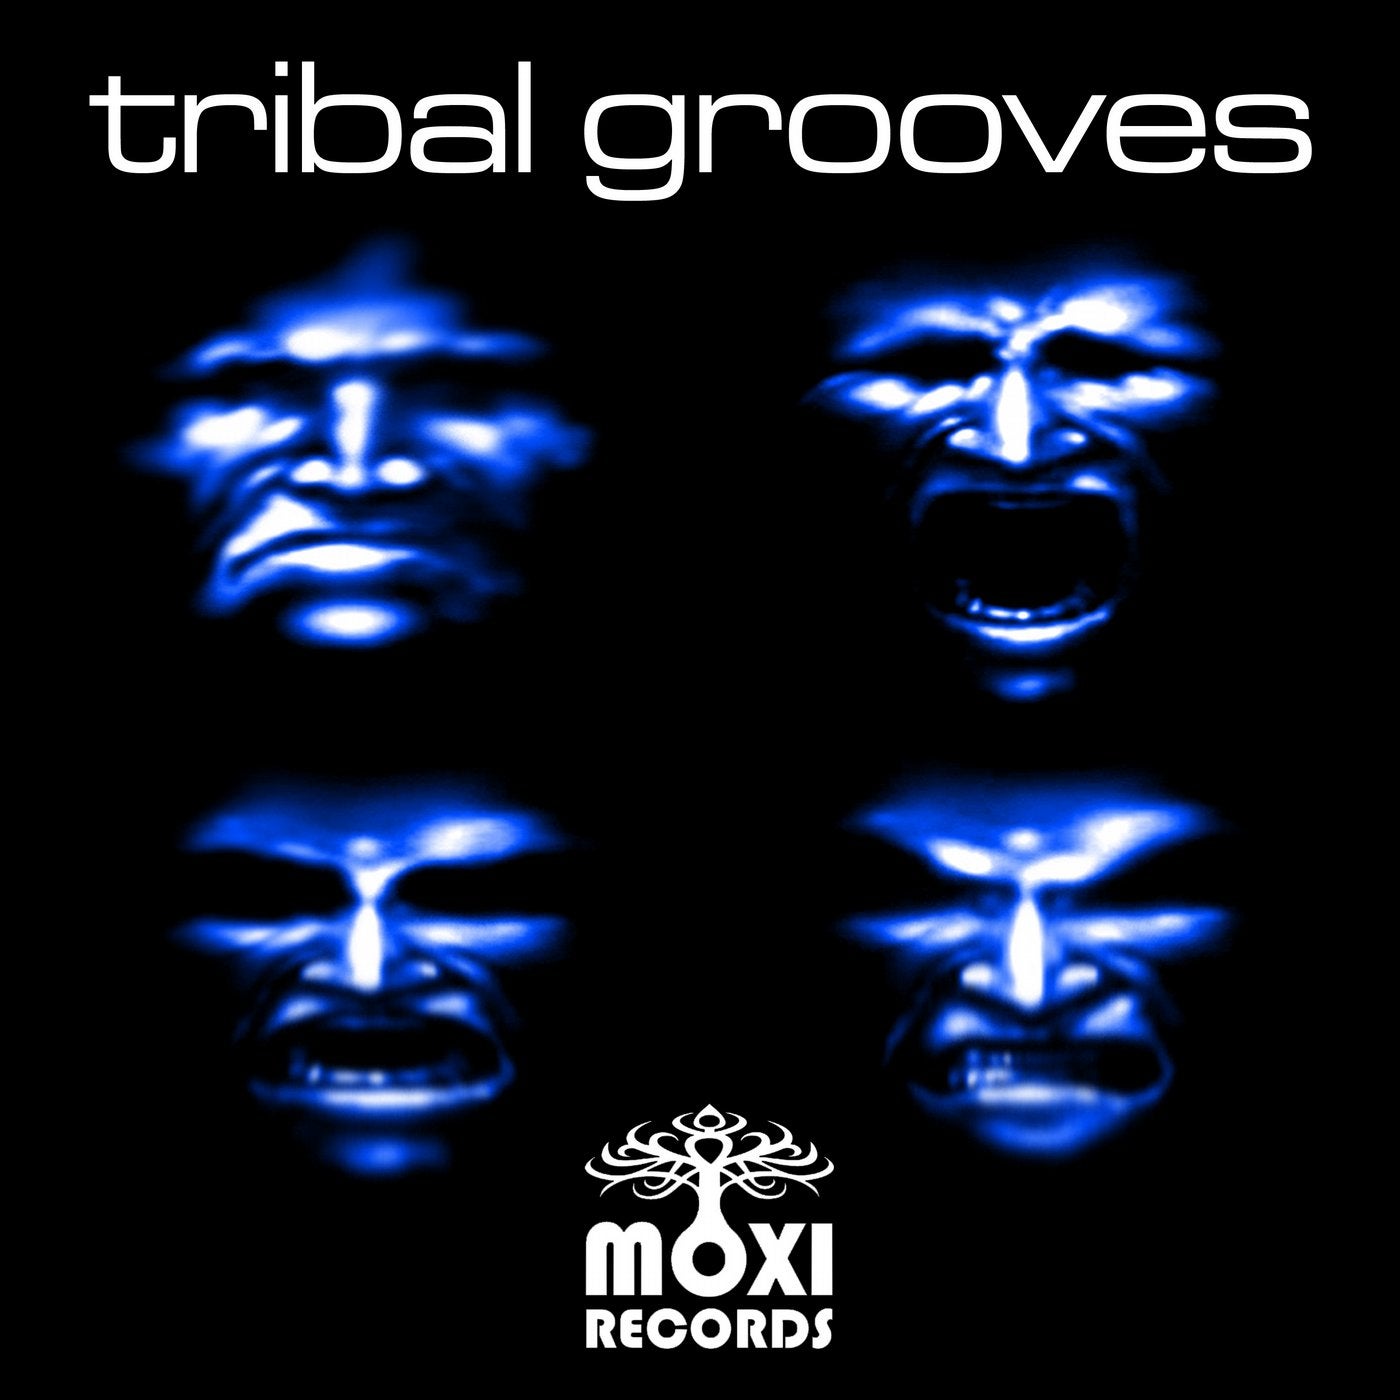 Tribal Grooves 4